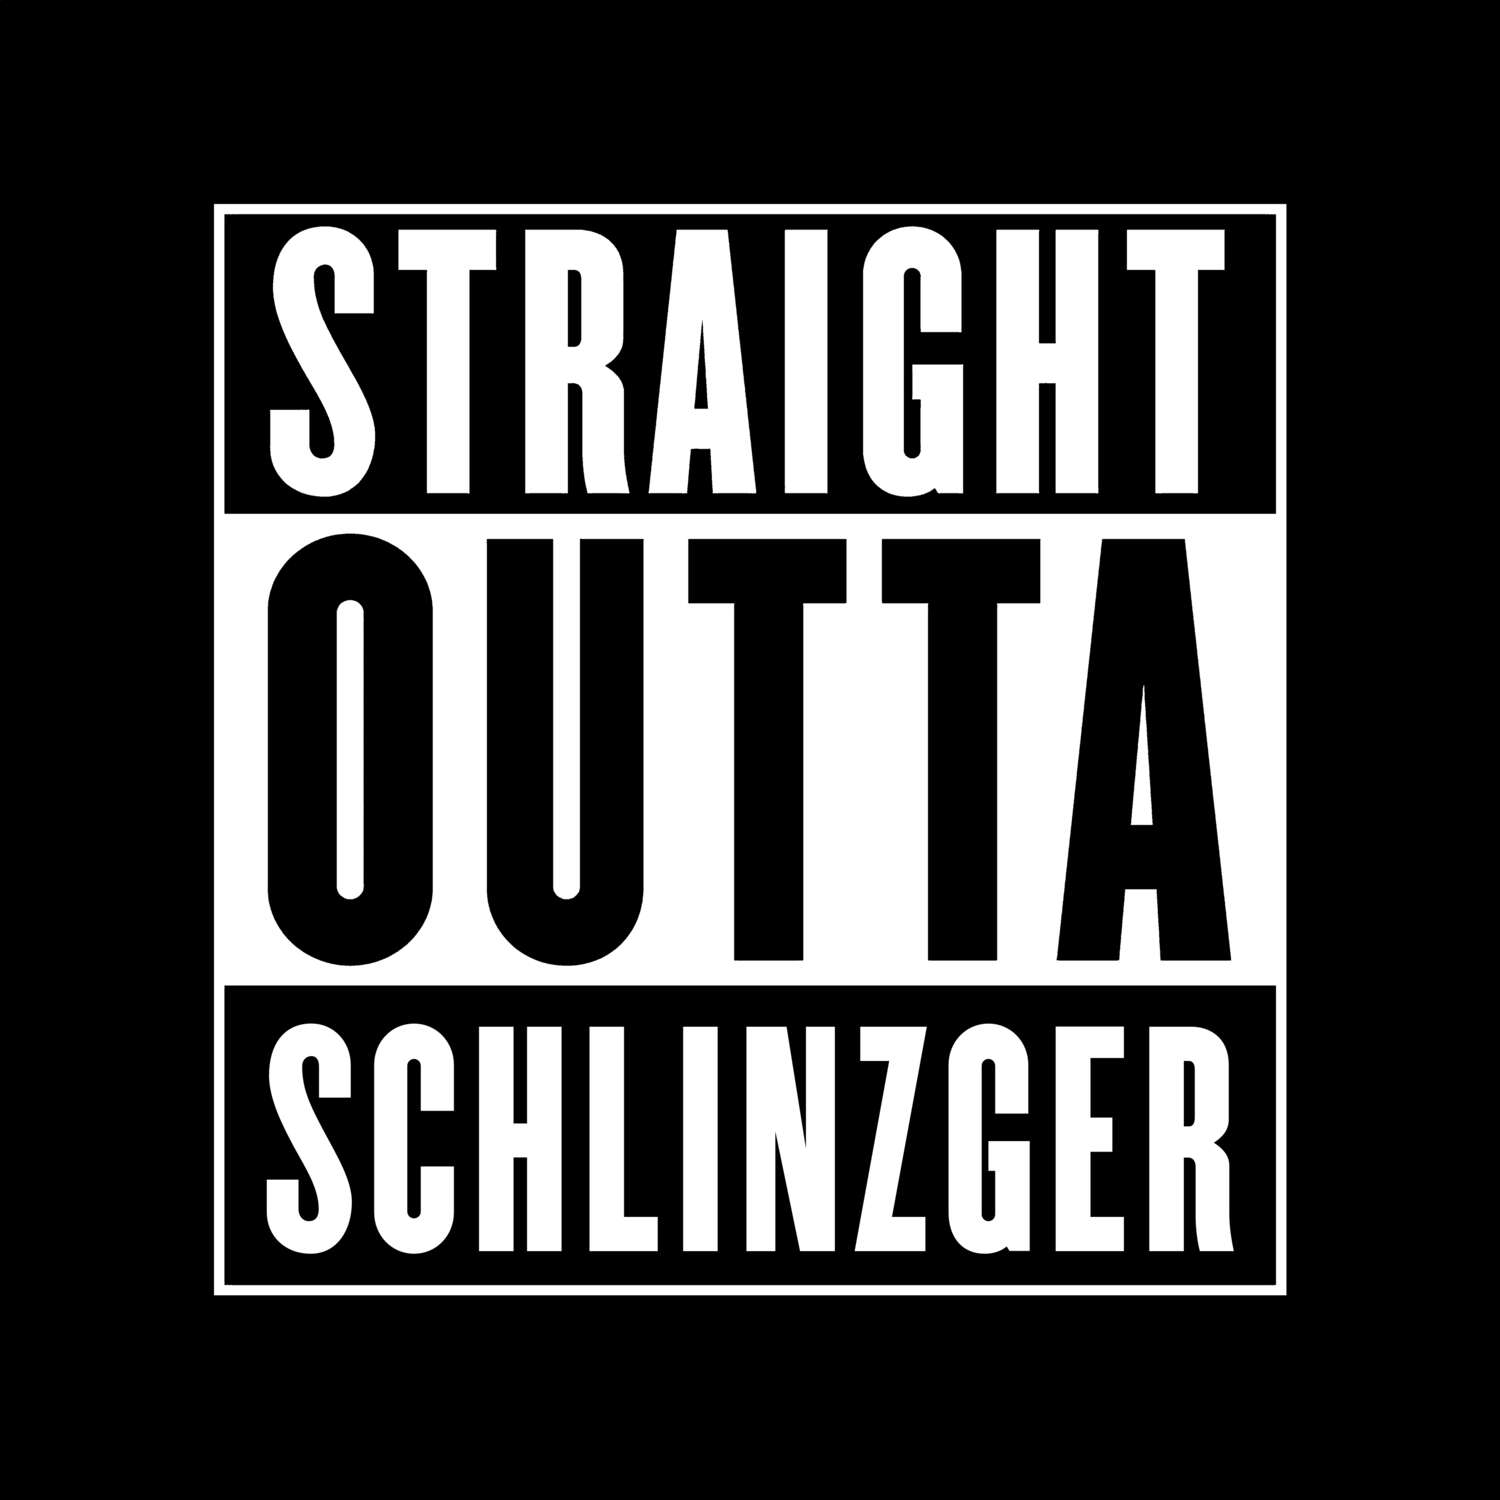 Schlinzger T-Shirt »Straight Outta«